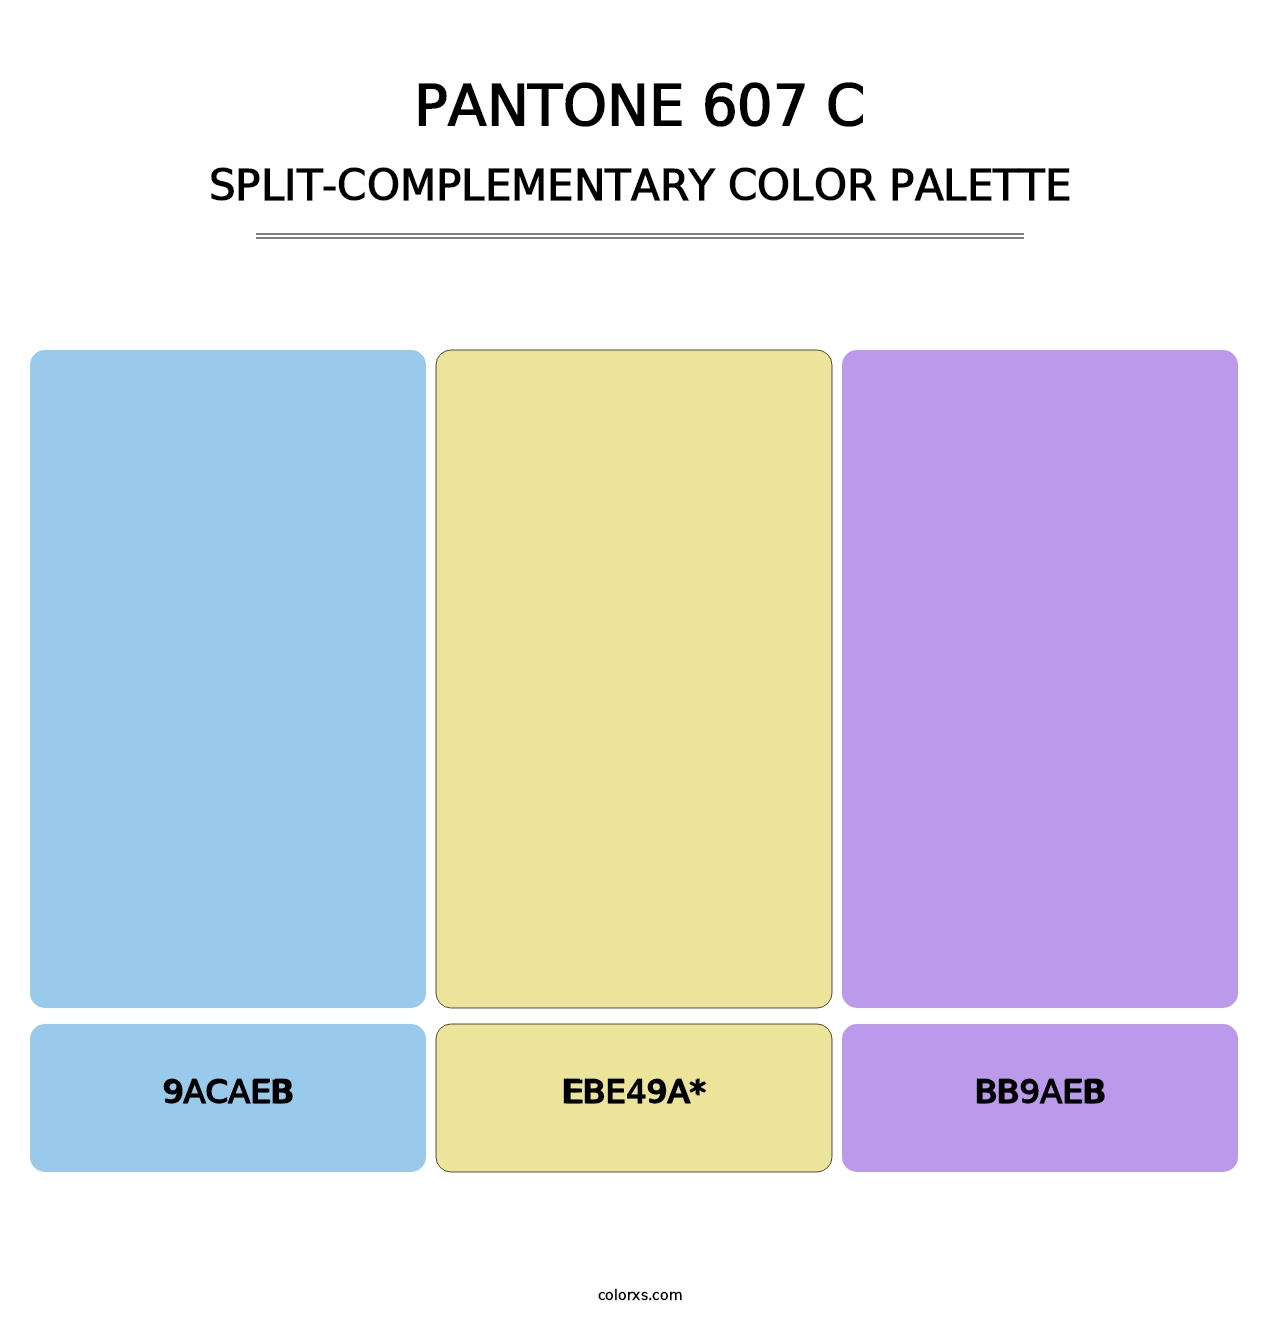 PANTONE 607 C - Split-Complementary Color Palette